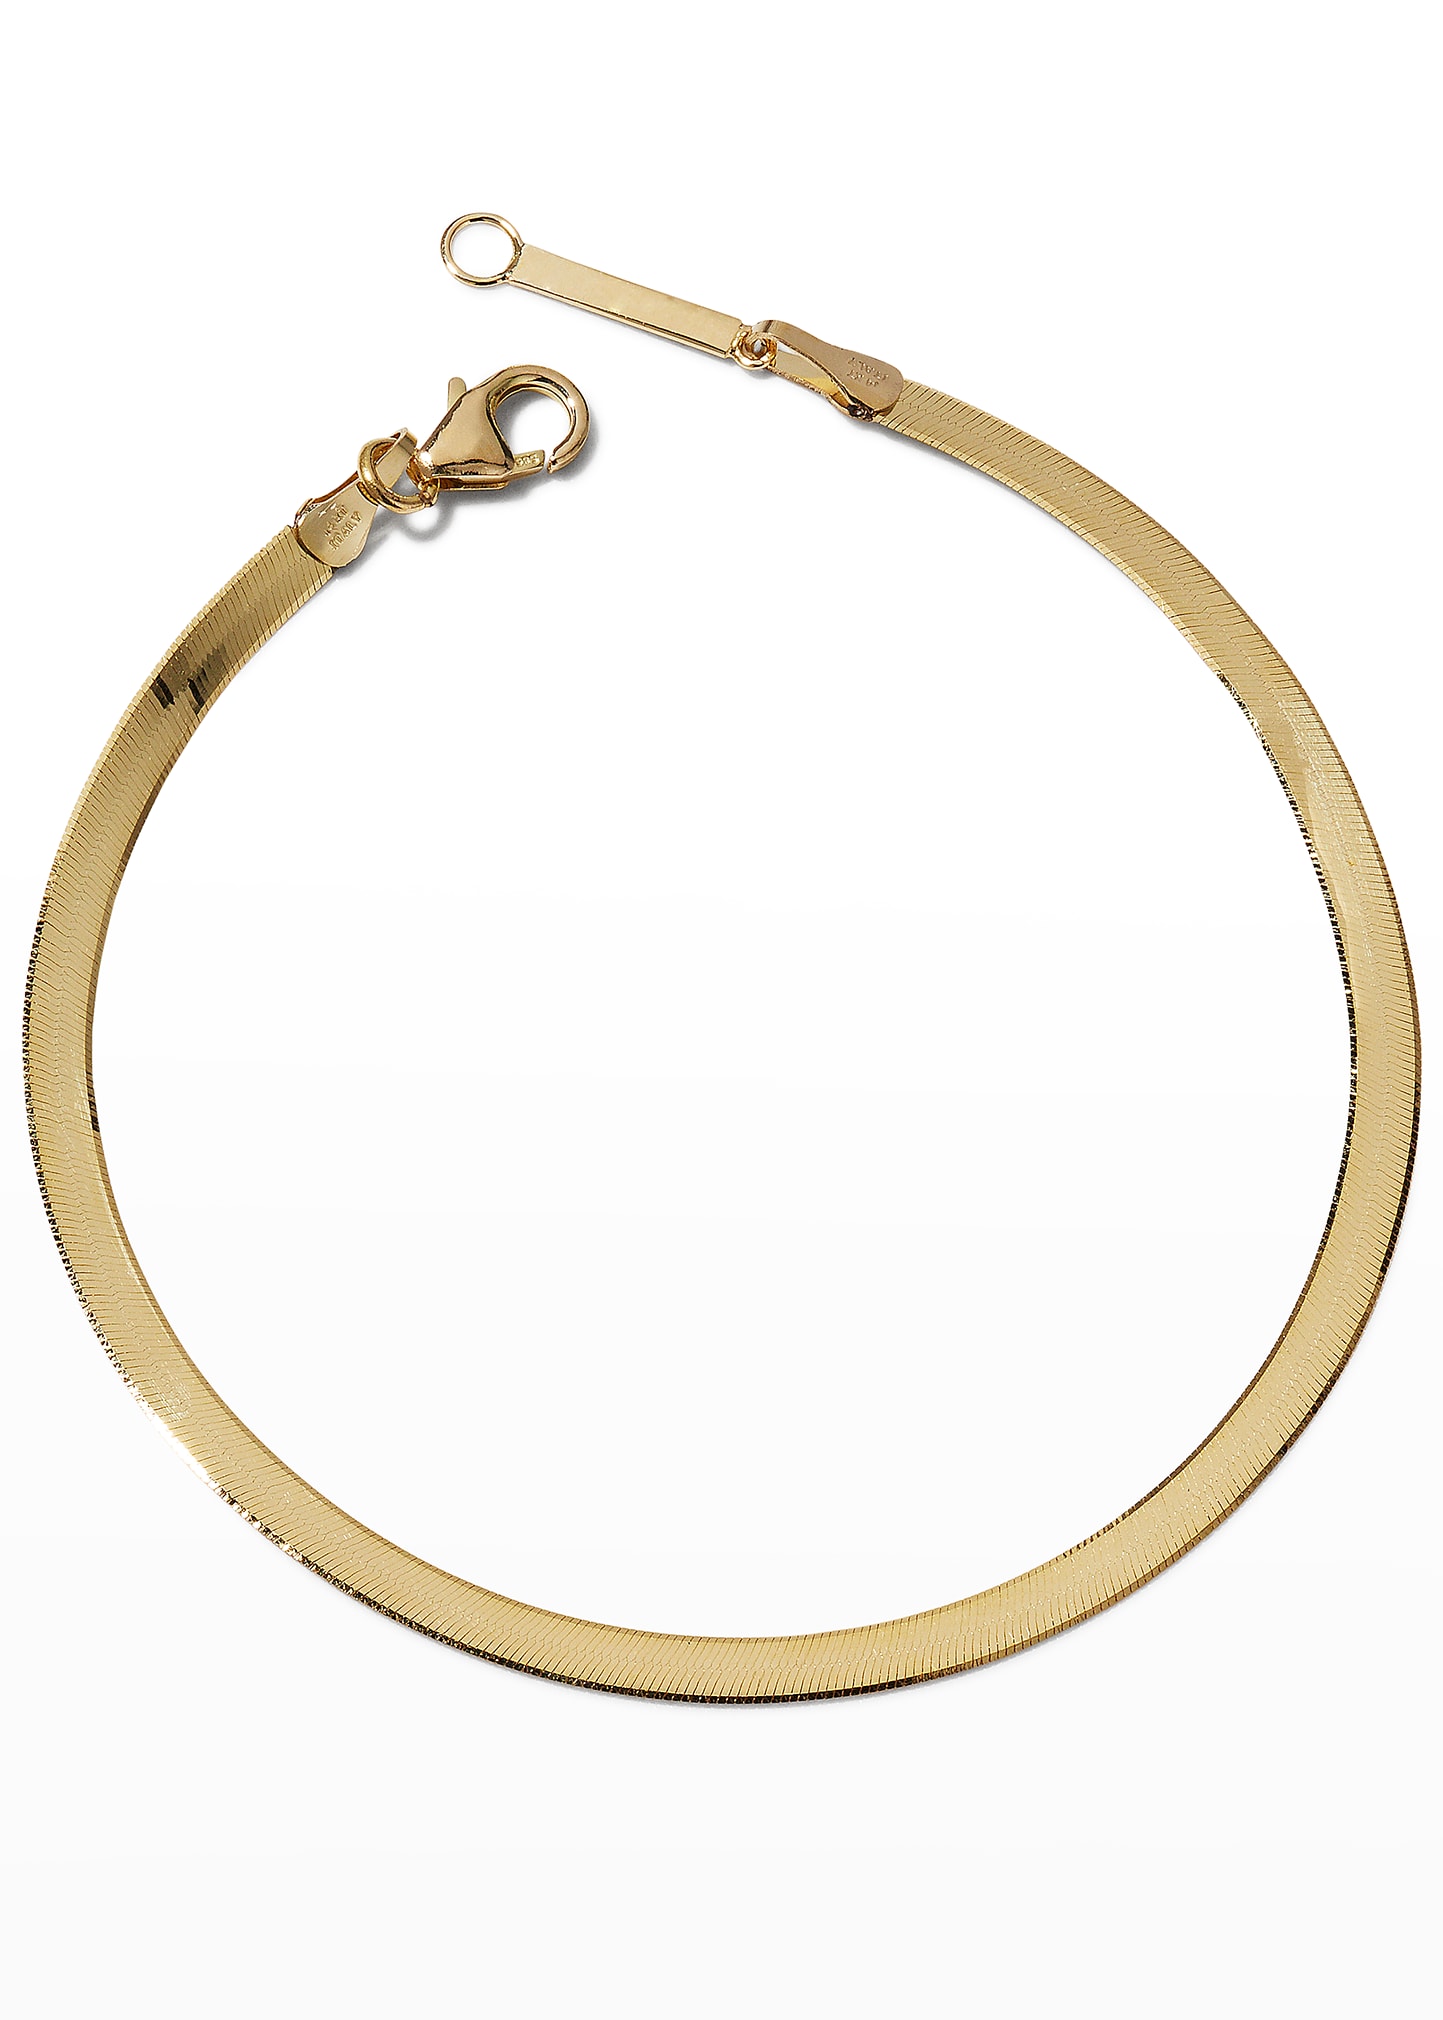 LANA 14k Liquid Gold Snake Chain Bracelet